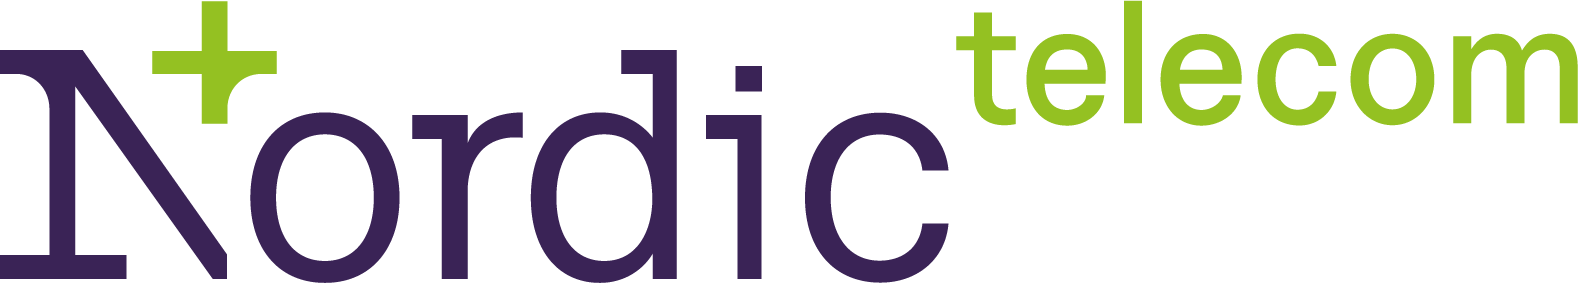 Nordic Telecom - logo.png